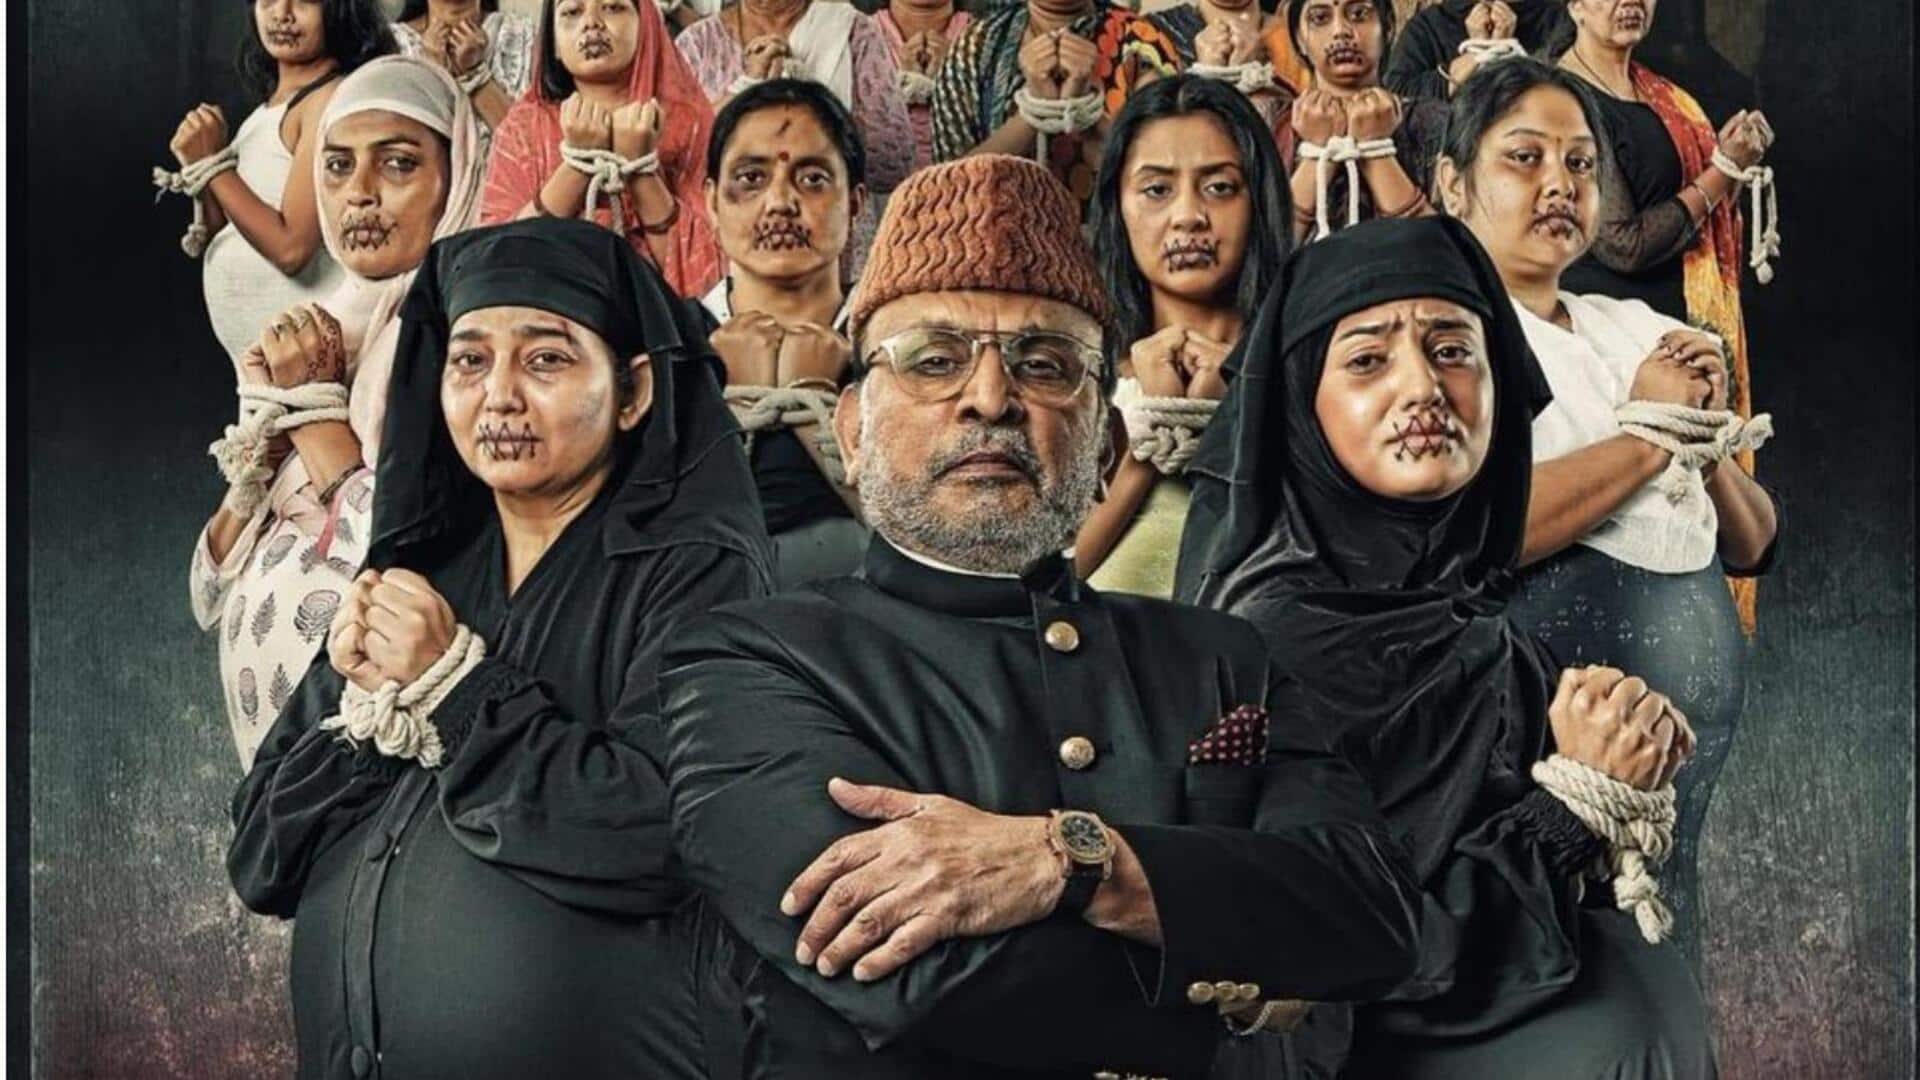 अन्नू कपूर की फिल्म 'हमारे बारह' को मिली रिलीज तारीख, नया पोस्टर भी जारी